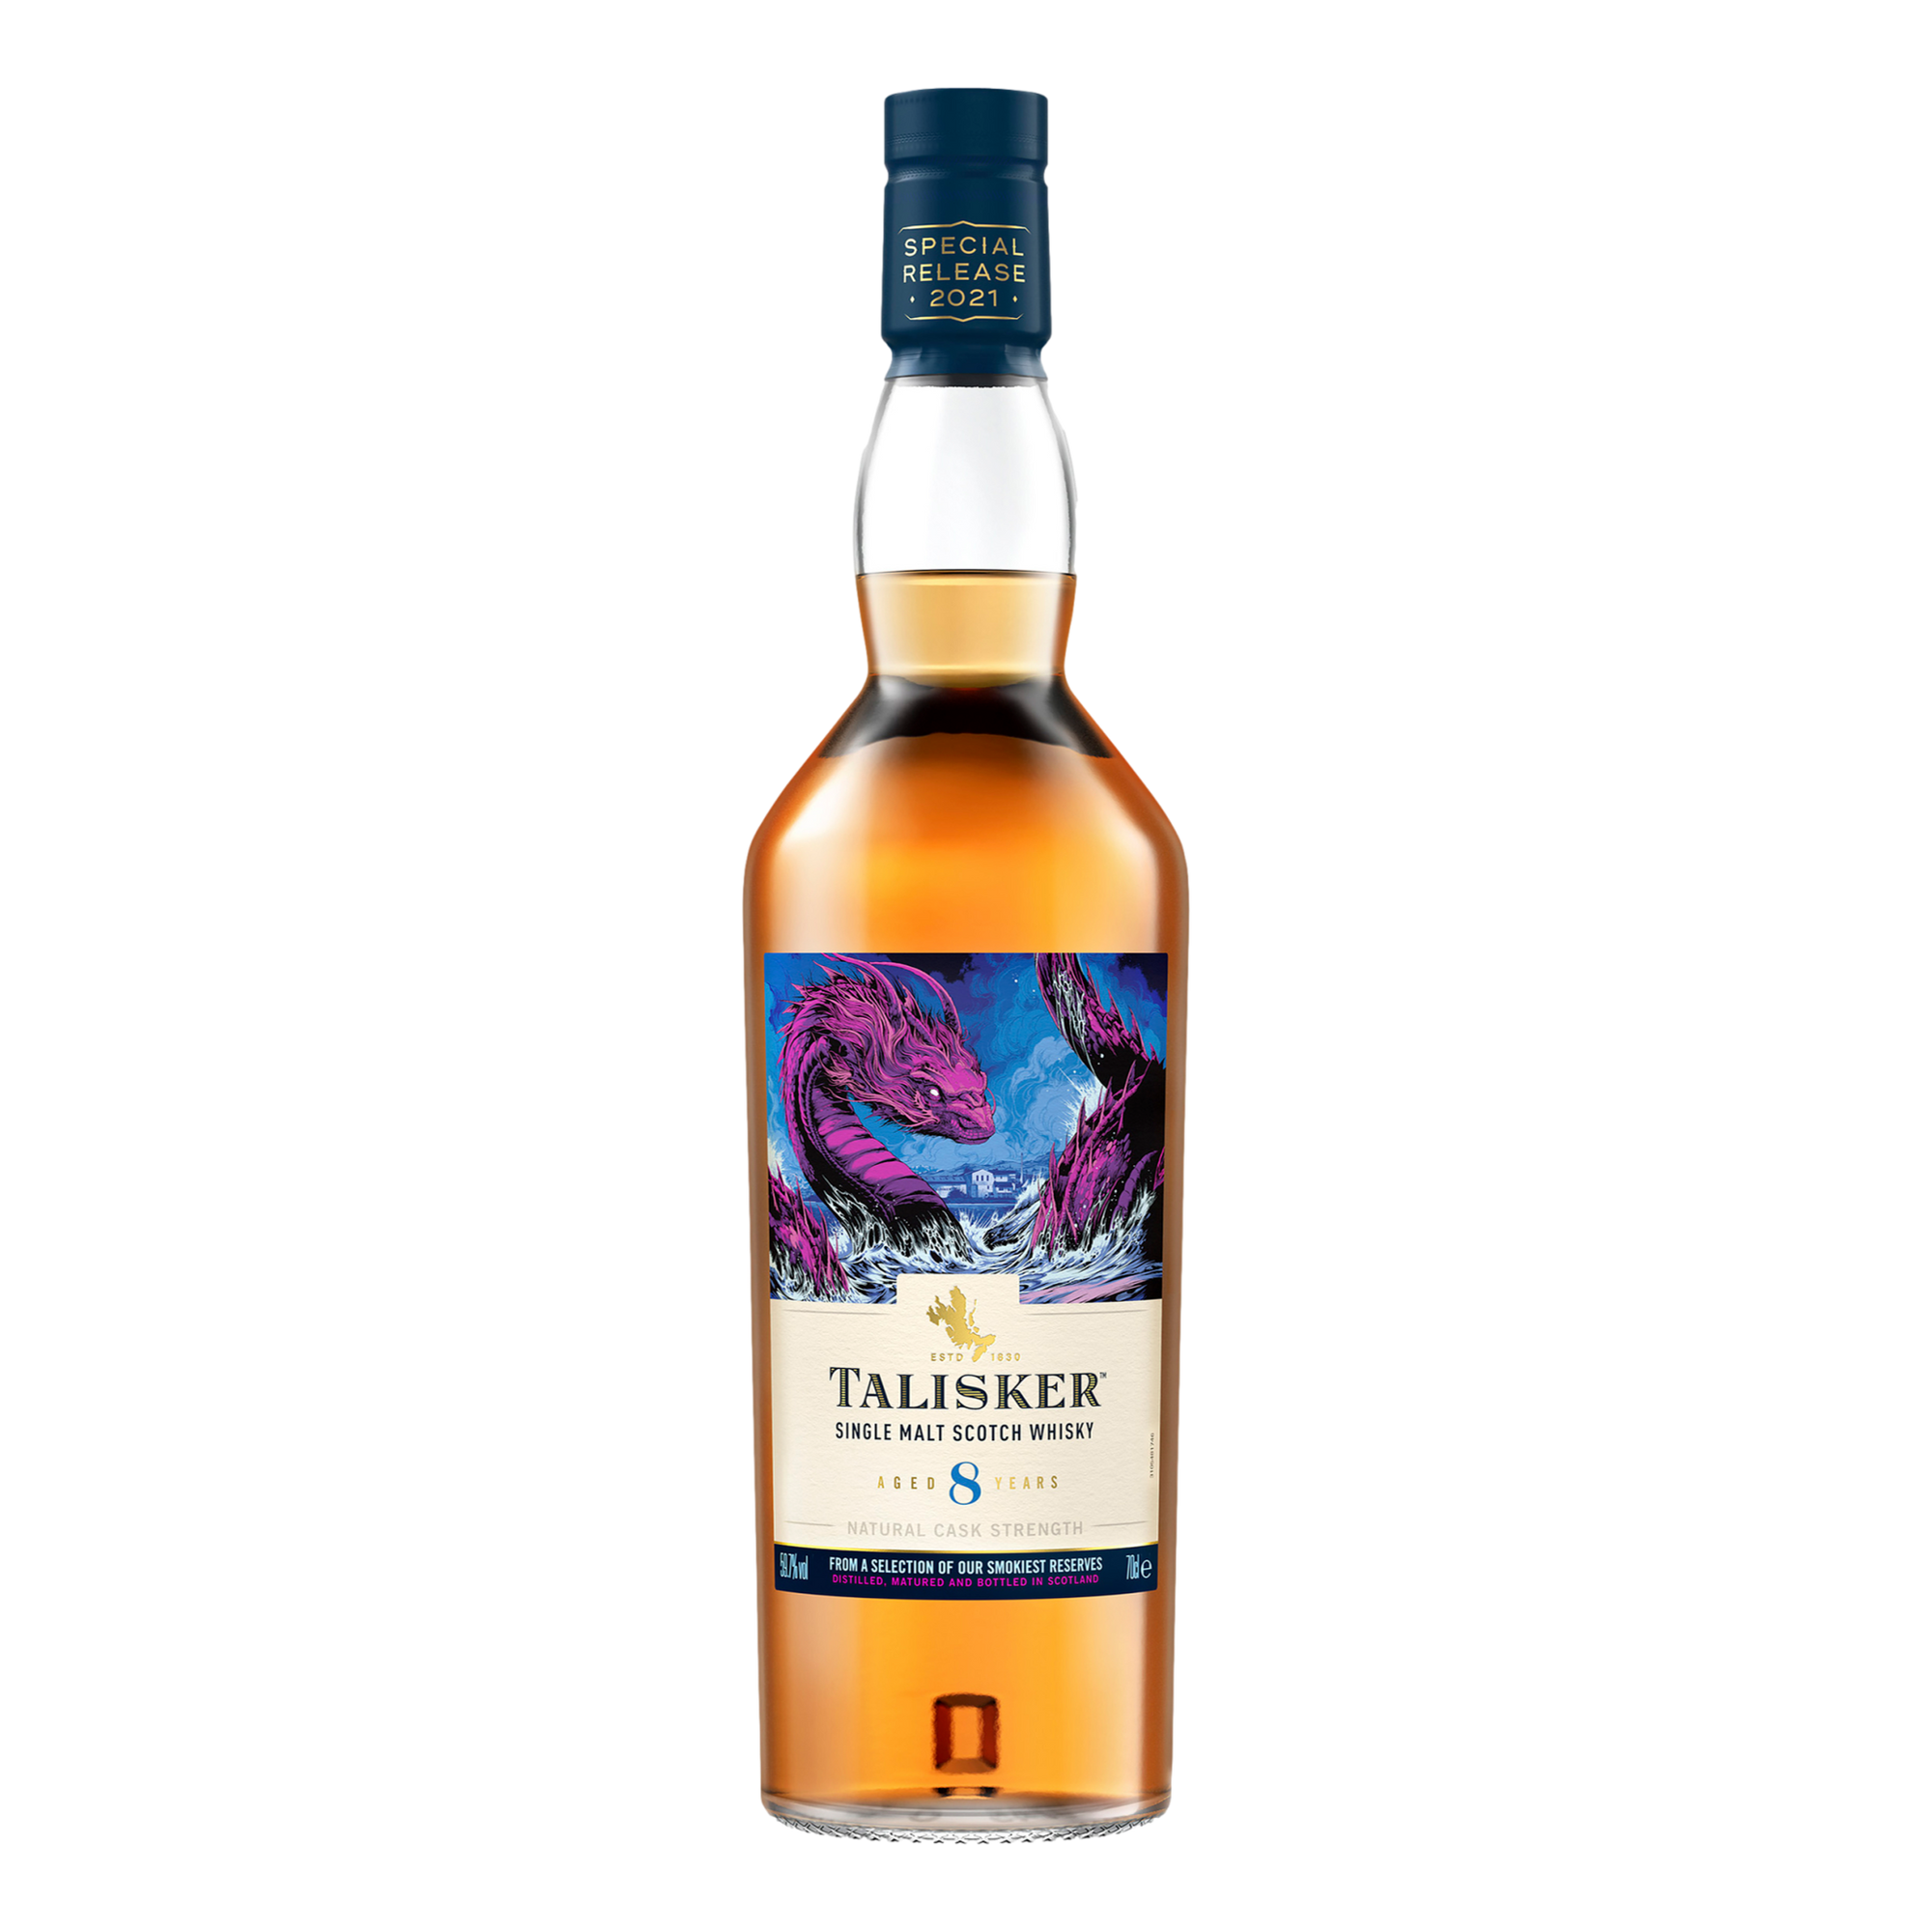 Talisker Single Malt Scotch Whisky 8YO 700ml - 2021 Release